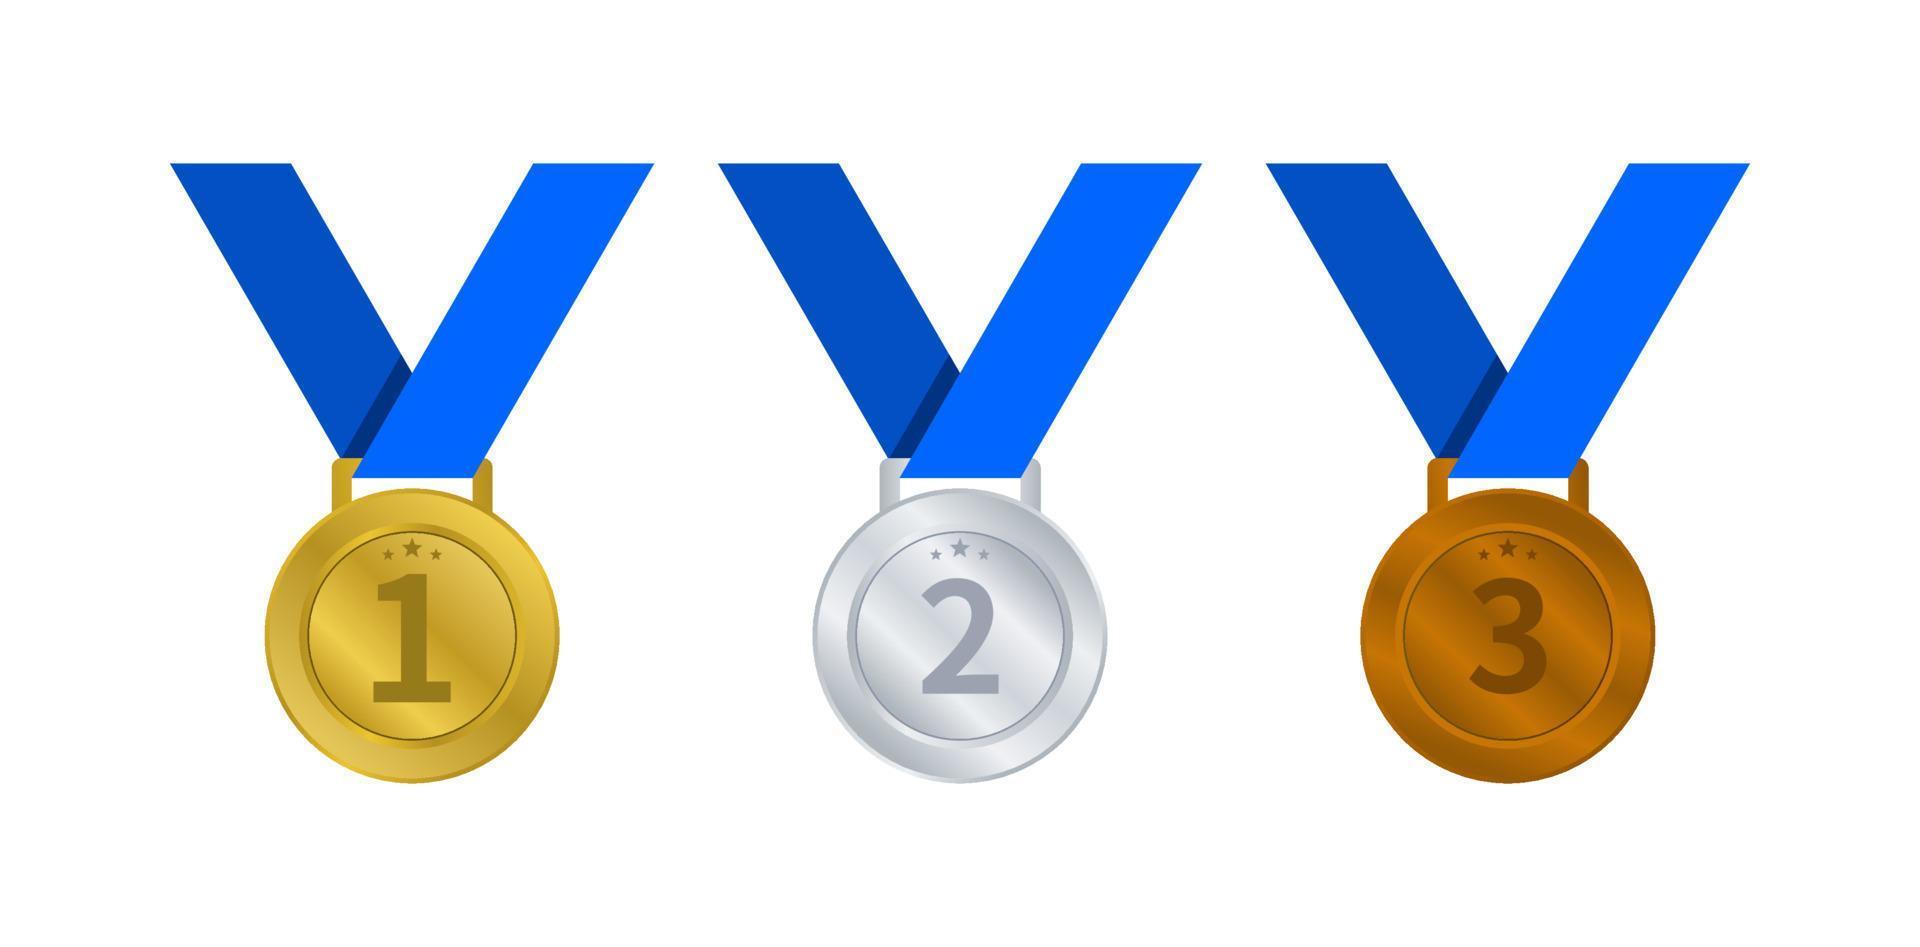 guld, silver, och brons medaljer med blå band, medalj för seger tilldela, mästerskap vektor